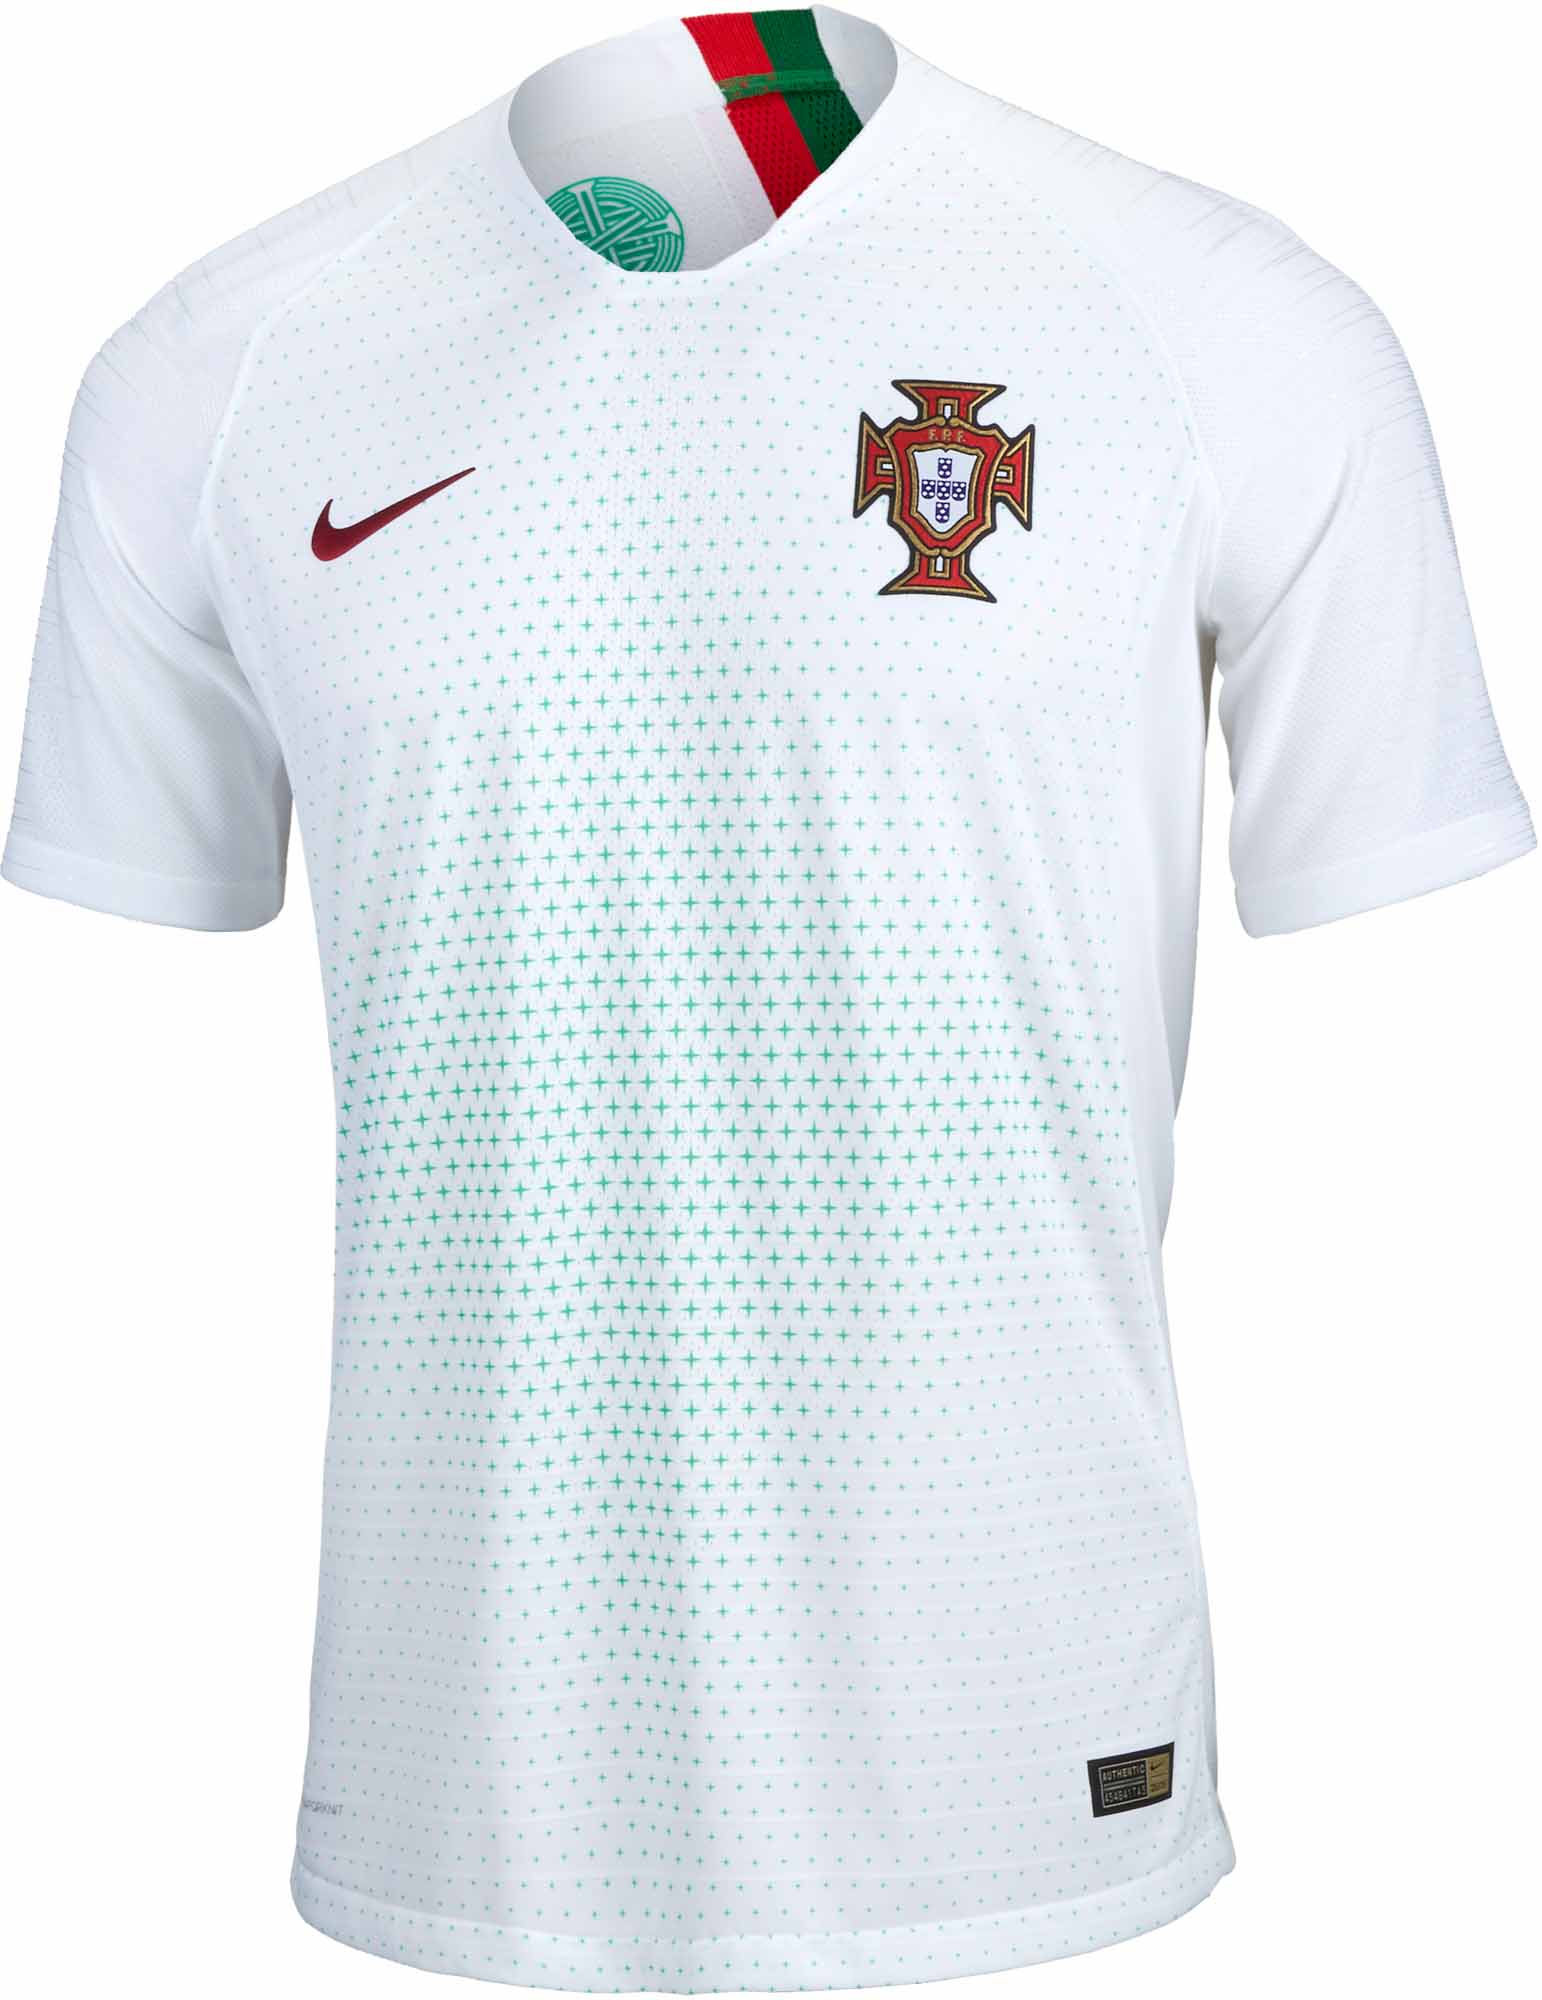 893878 100 Nike Portugal Away Match Jsy 01 